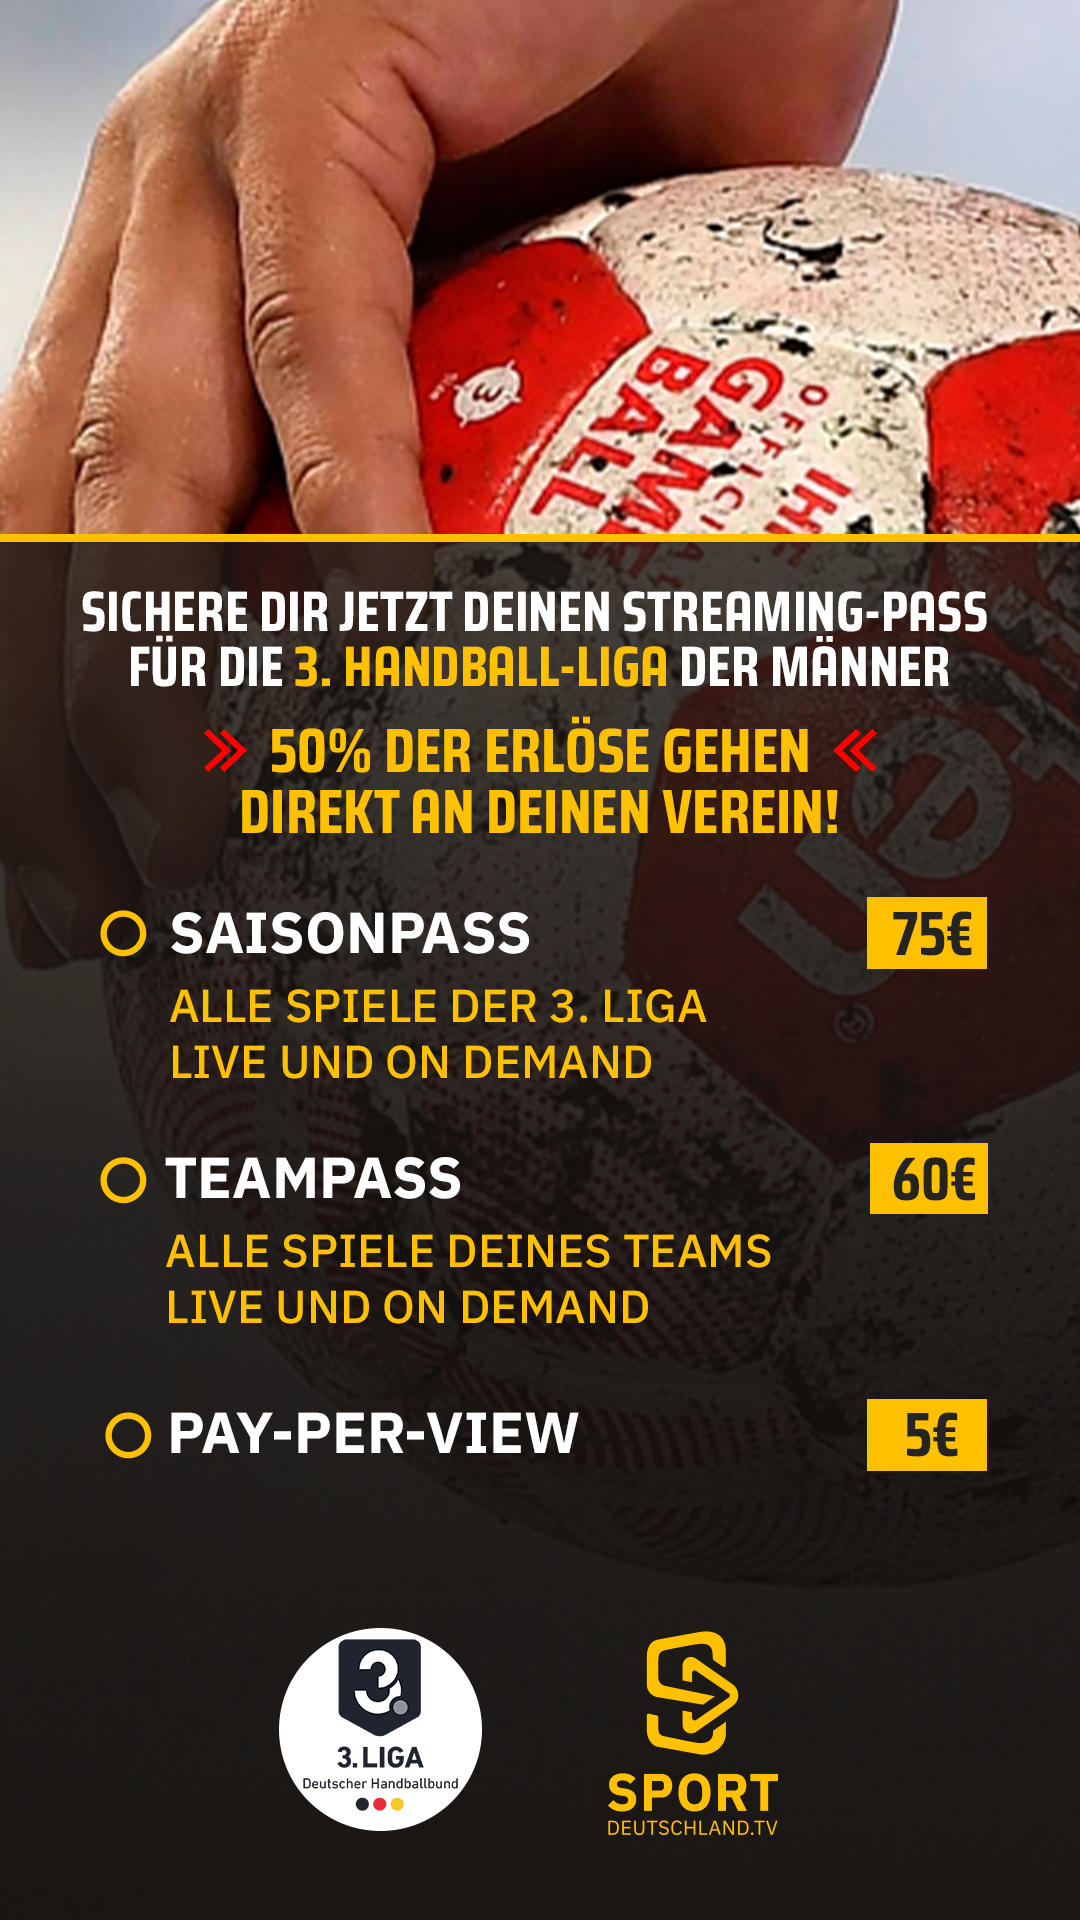 Der Saisonpass in der 3. Handball-Liga kostet 75€, ein Teampass 60€ und ein Pay-per-view nur 5€.